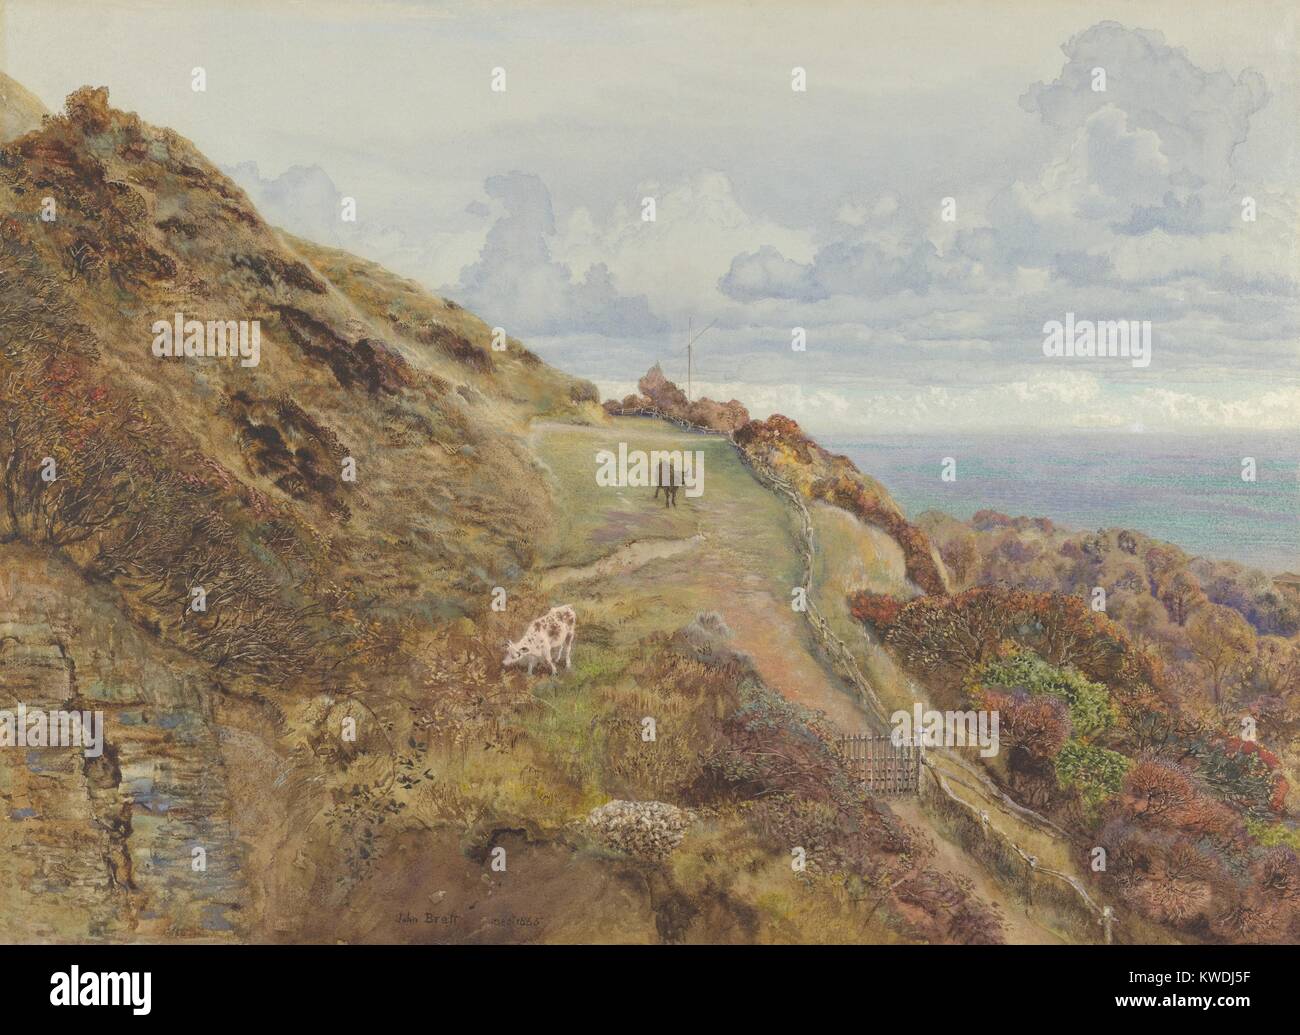 BONCHURCH DOWNS, von John Brett, 1865, British Aquarell Malerei. Isle of Wight Landschaft ist sehr detailliert dargestellt. Es gibt grasende Kühe auf einer Weide im Hochland, mit dem Meer in der Ferne sich bis an den Horizont, in diesem Meisterwerk der englischen Aquarell (BSLOC 2017 9 134) Stockfoto